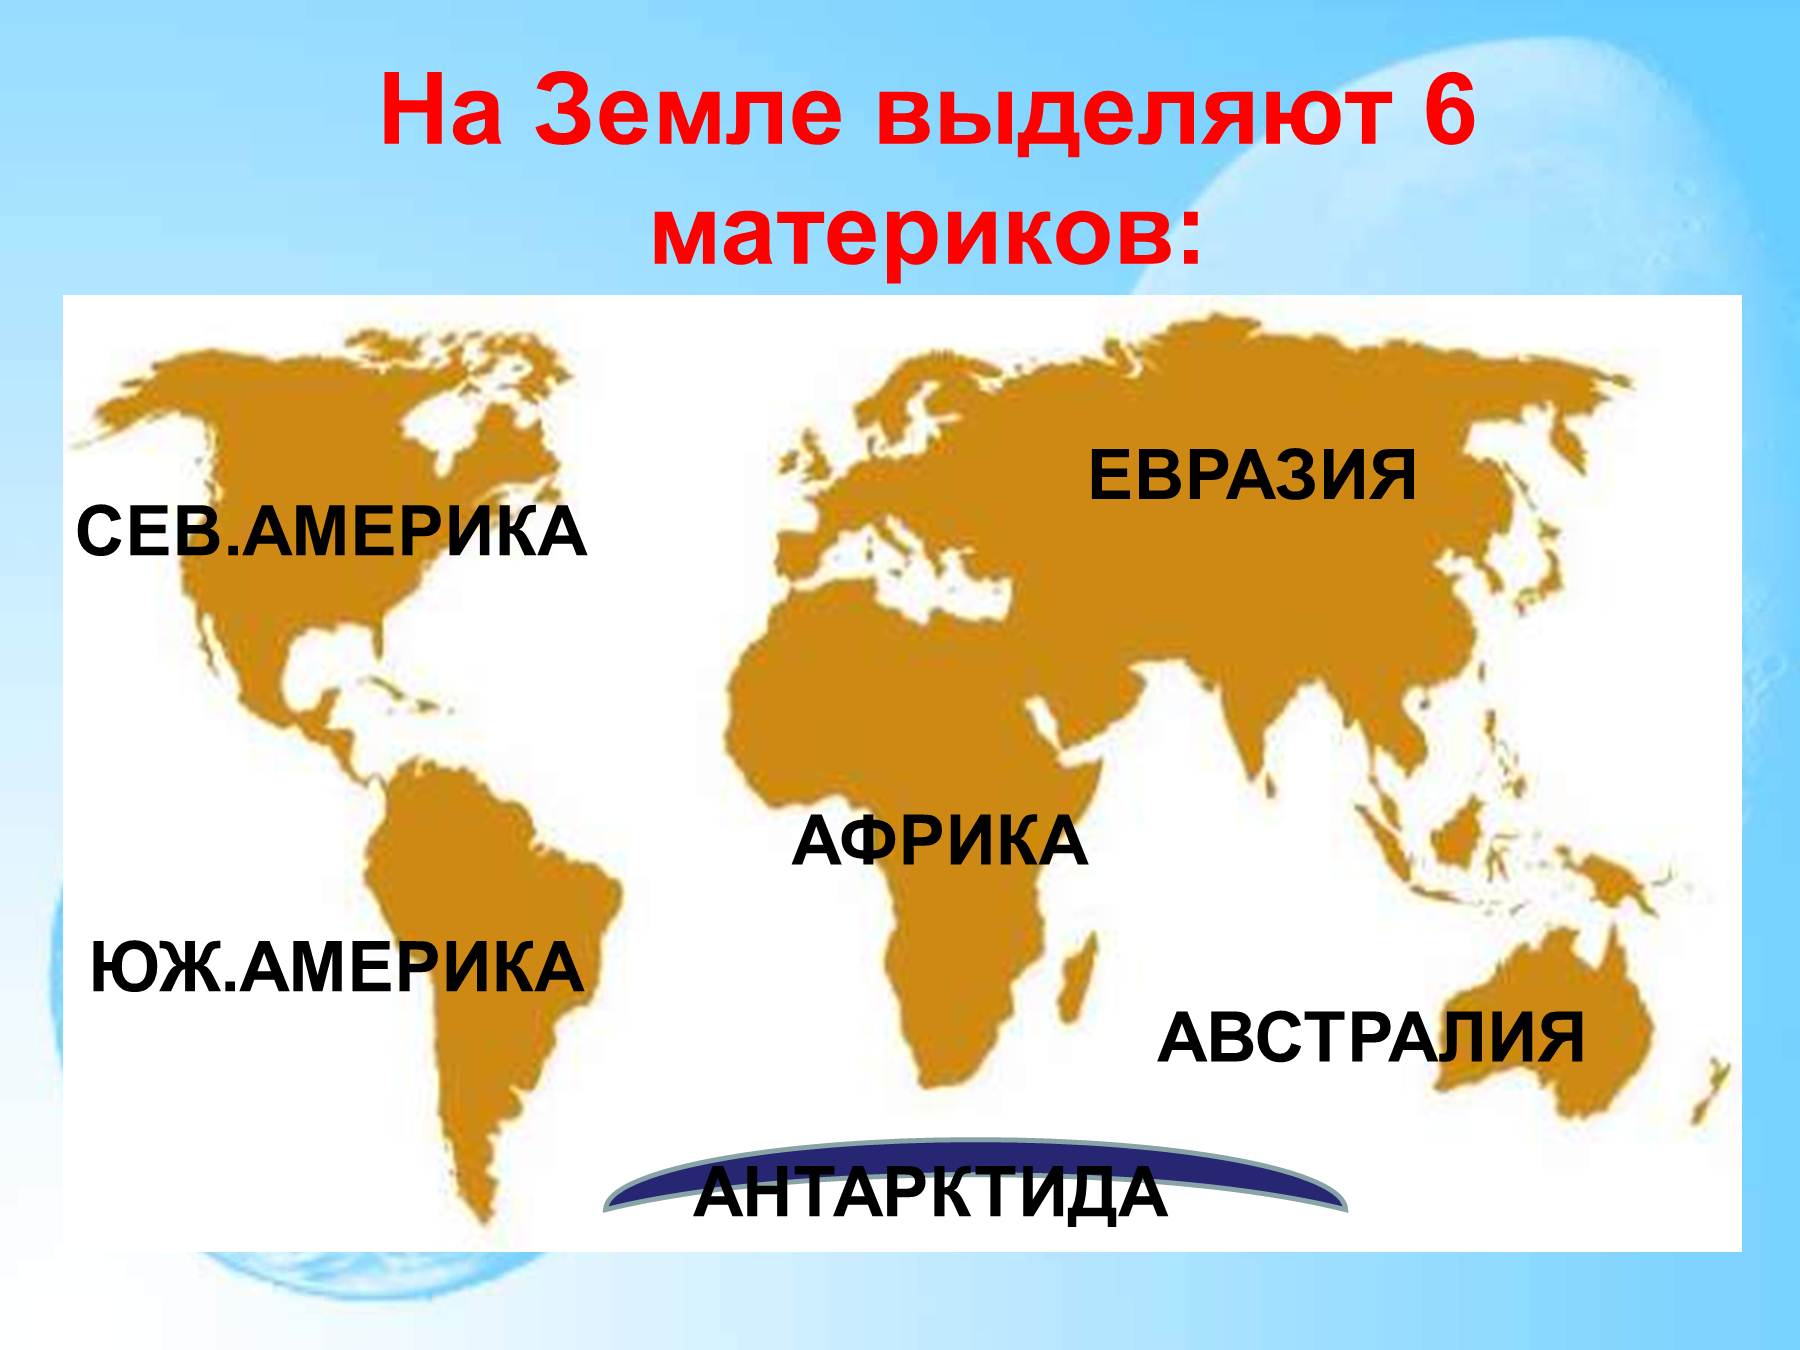 Карта отдельных материков